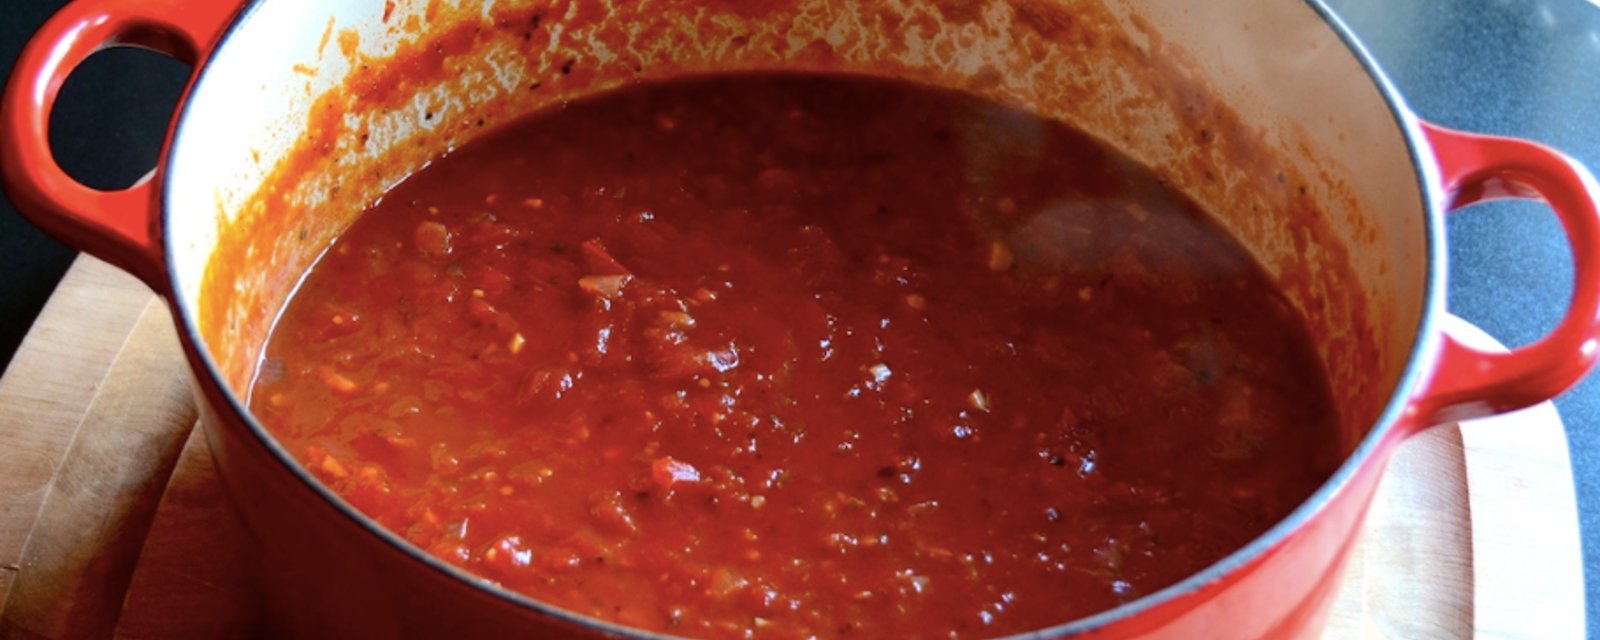 La meilleure sauce tomate faite maison